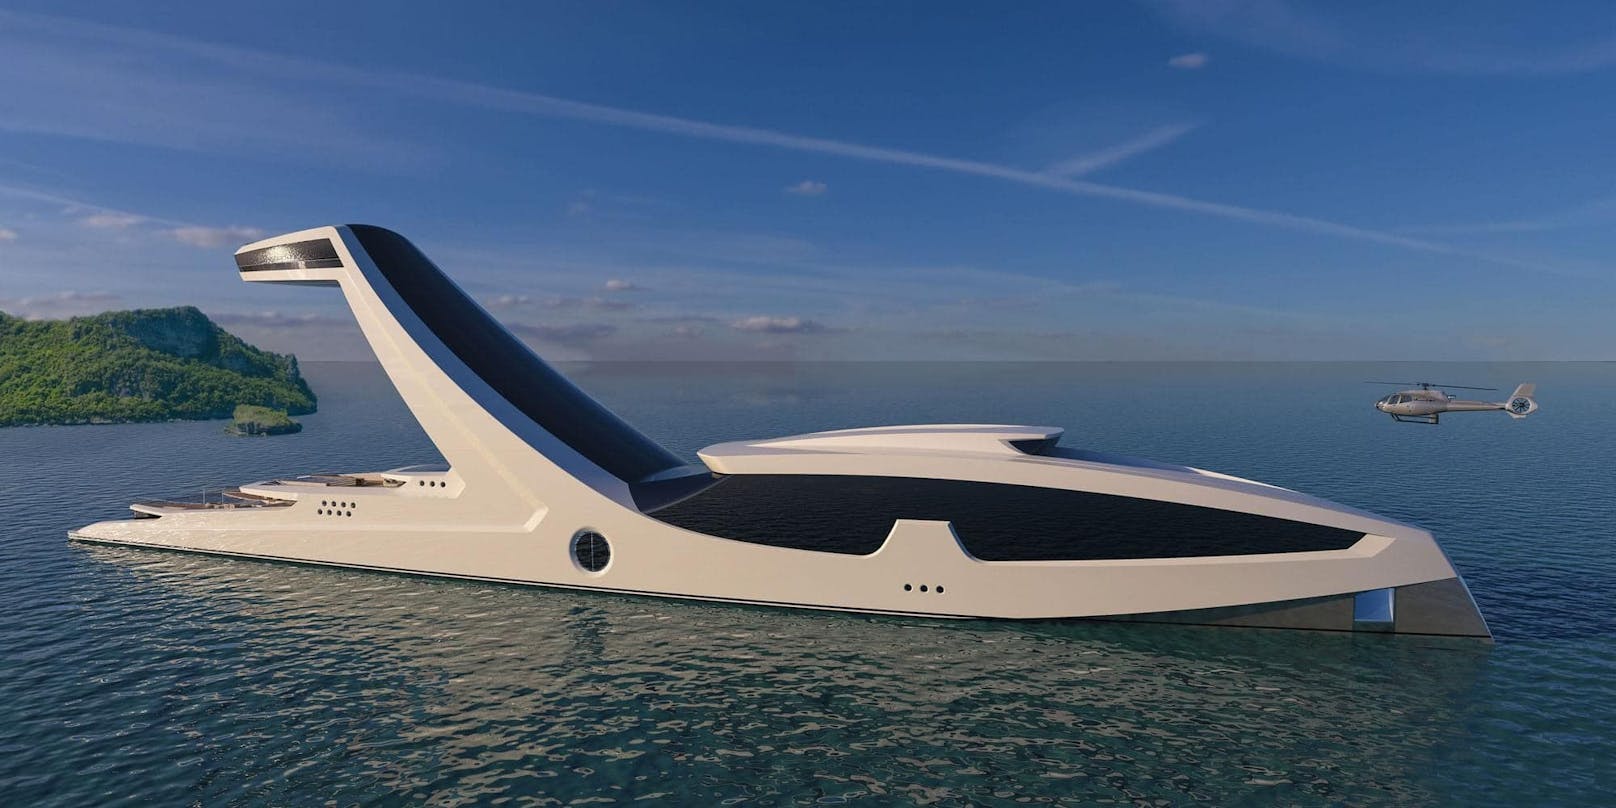 Der italienische Designer Gabriele Teruzzi verzaubert das Web mit seiner neuesten Vision: einer 150 Meter langen Superyacht, bestehend aus mehreren Decks und einer Art Panoramaplattform in 38 Metern Höhe.